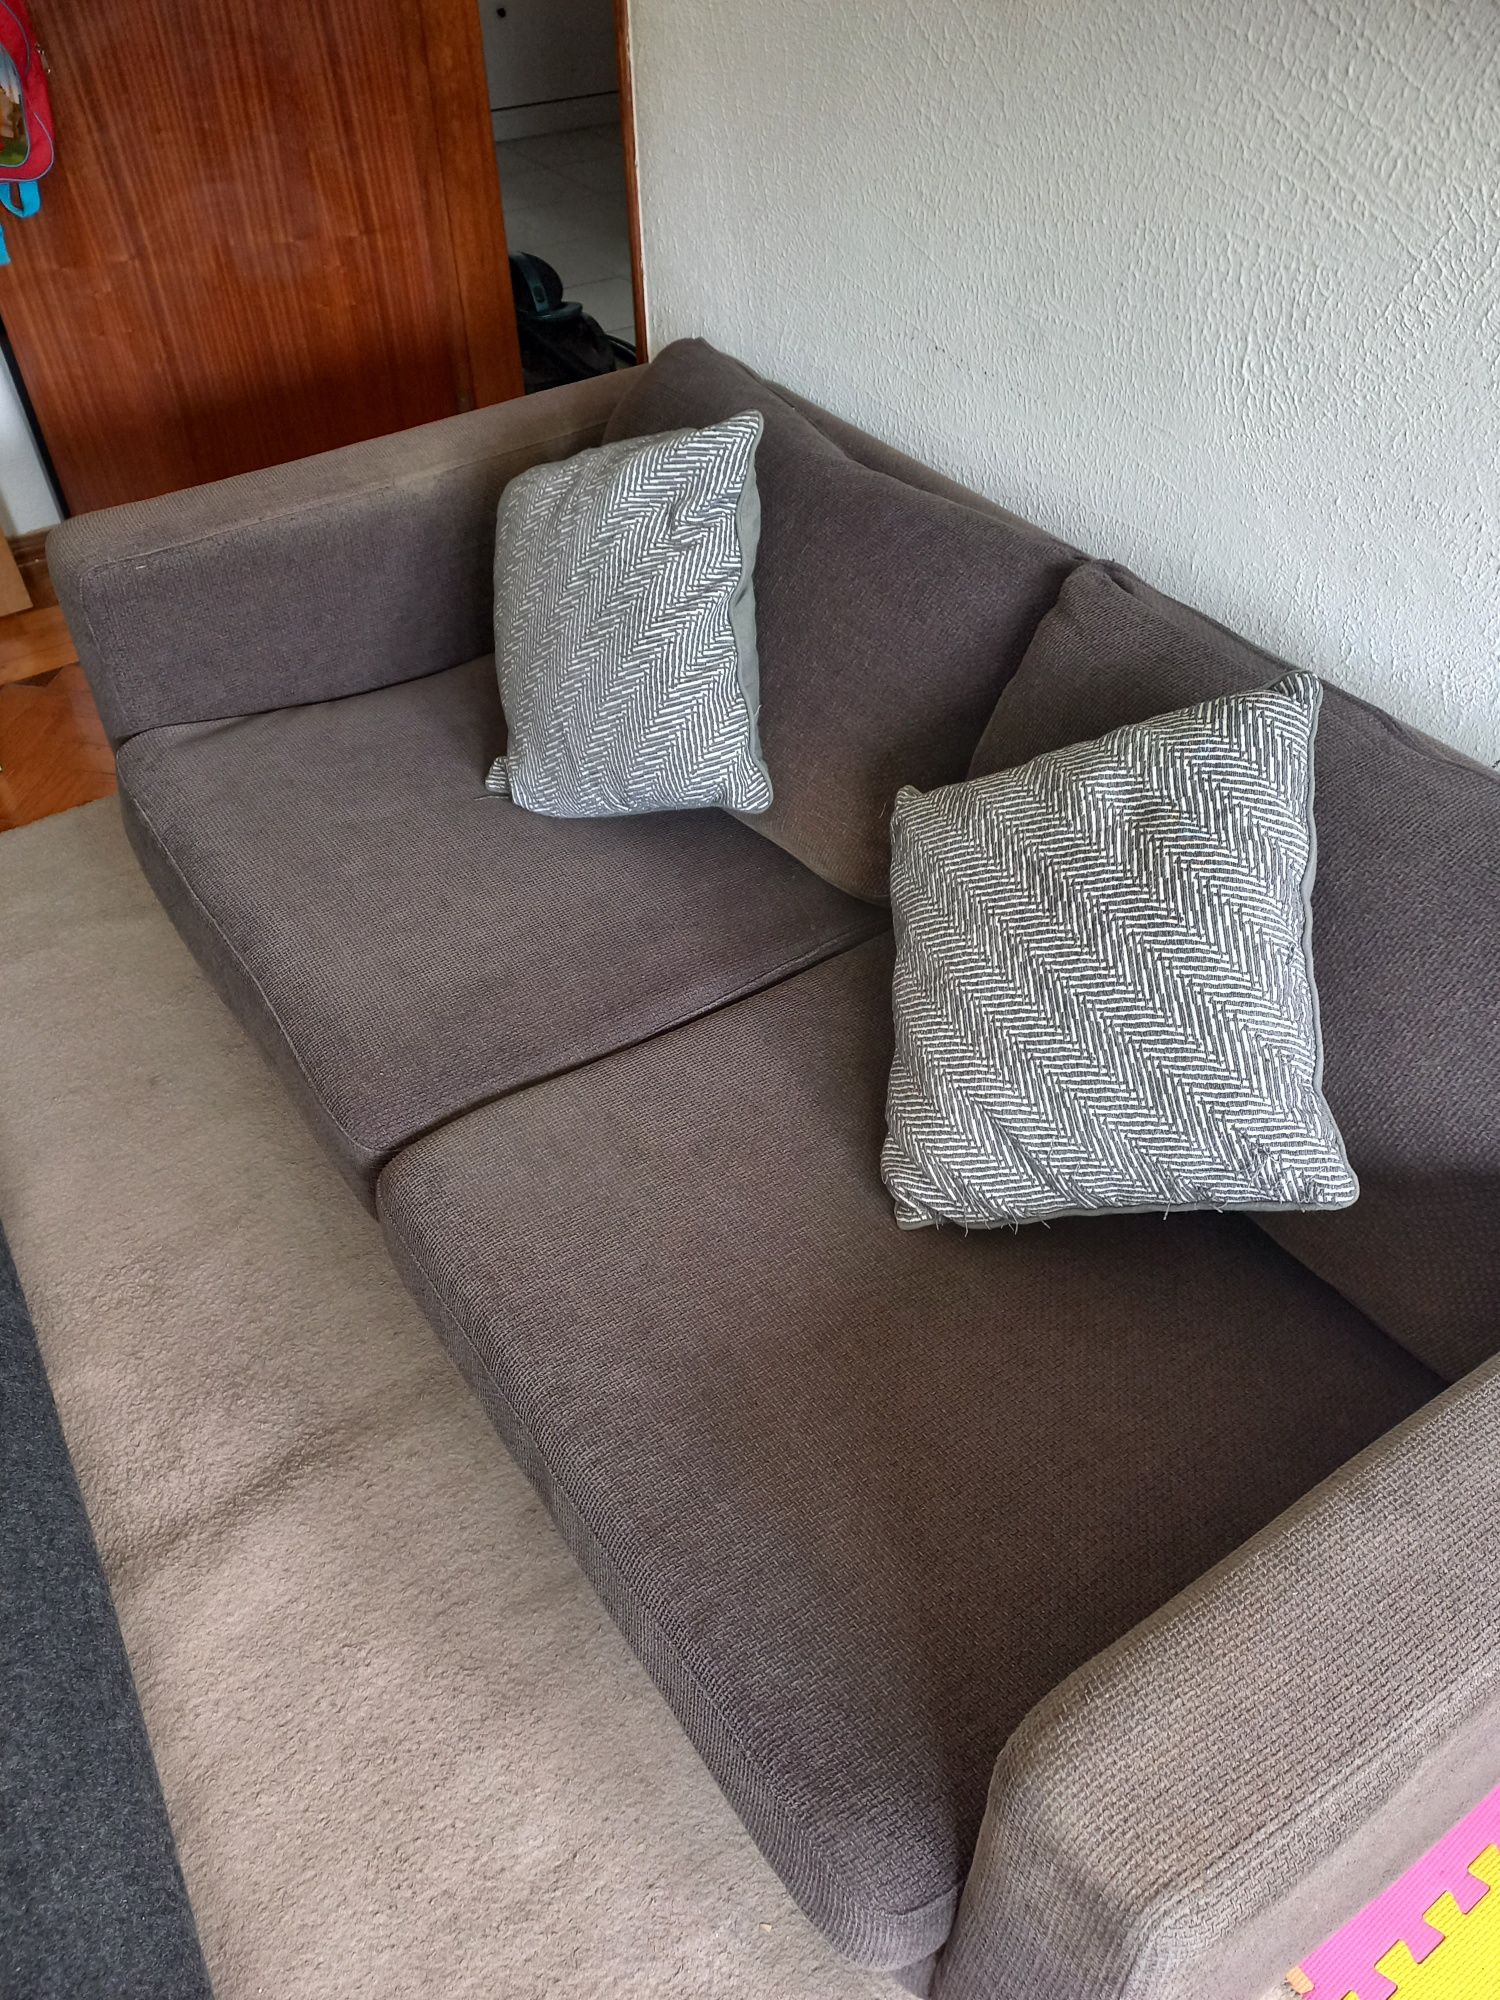 Sofa para desocupar- urgente